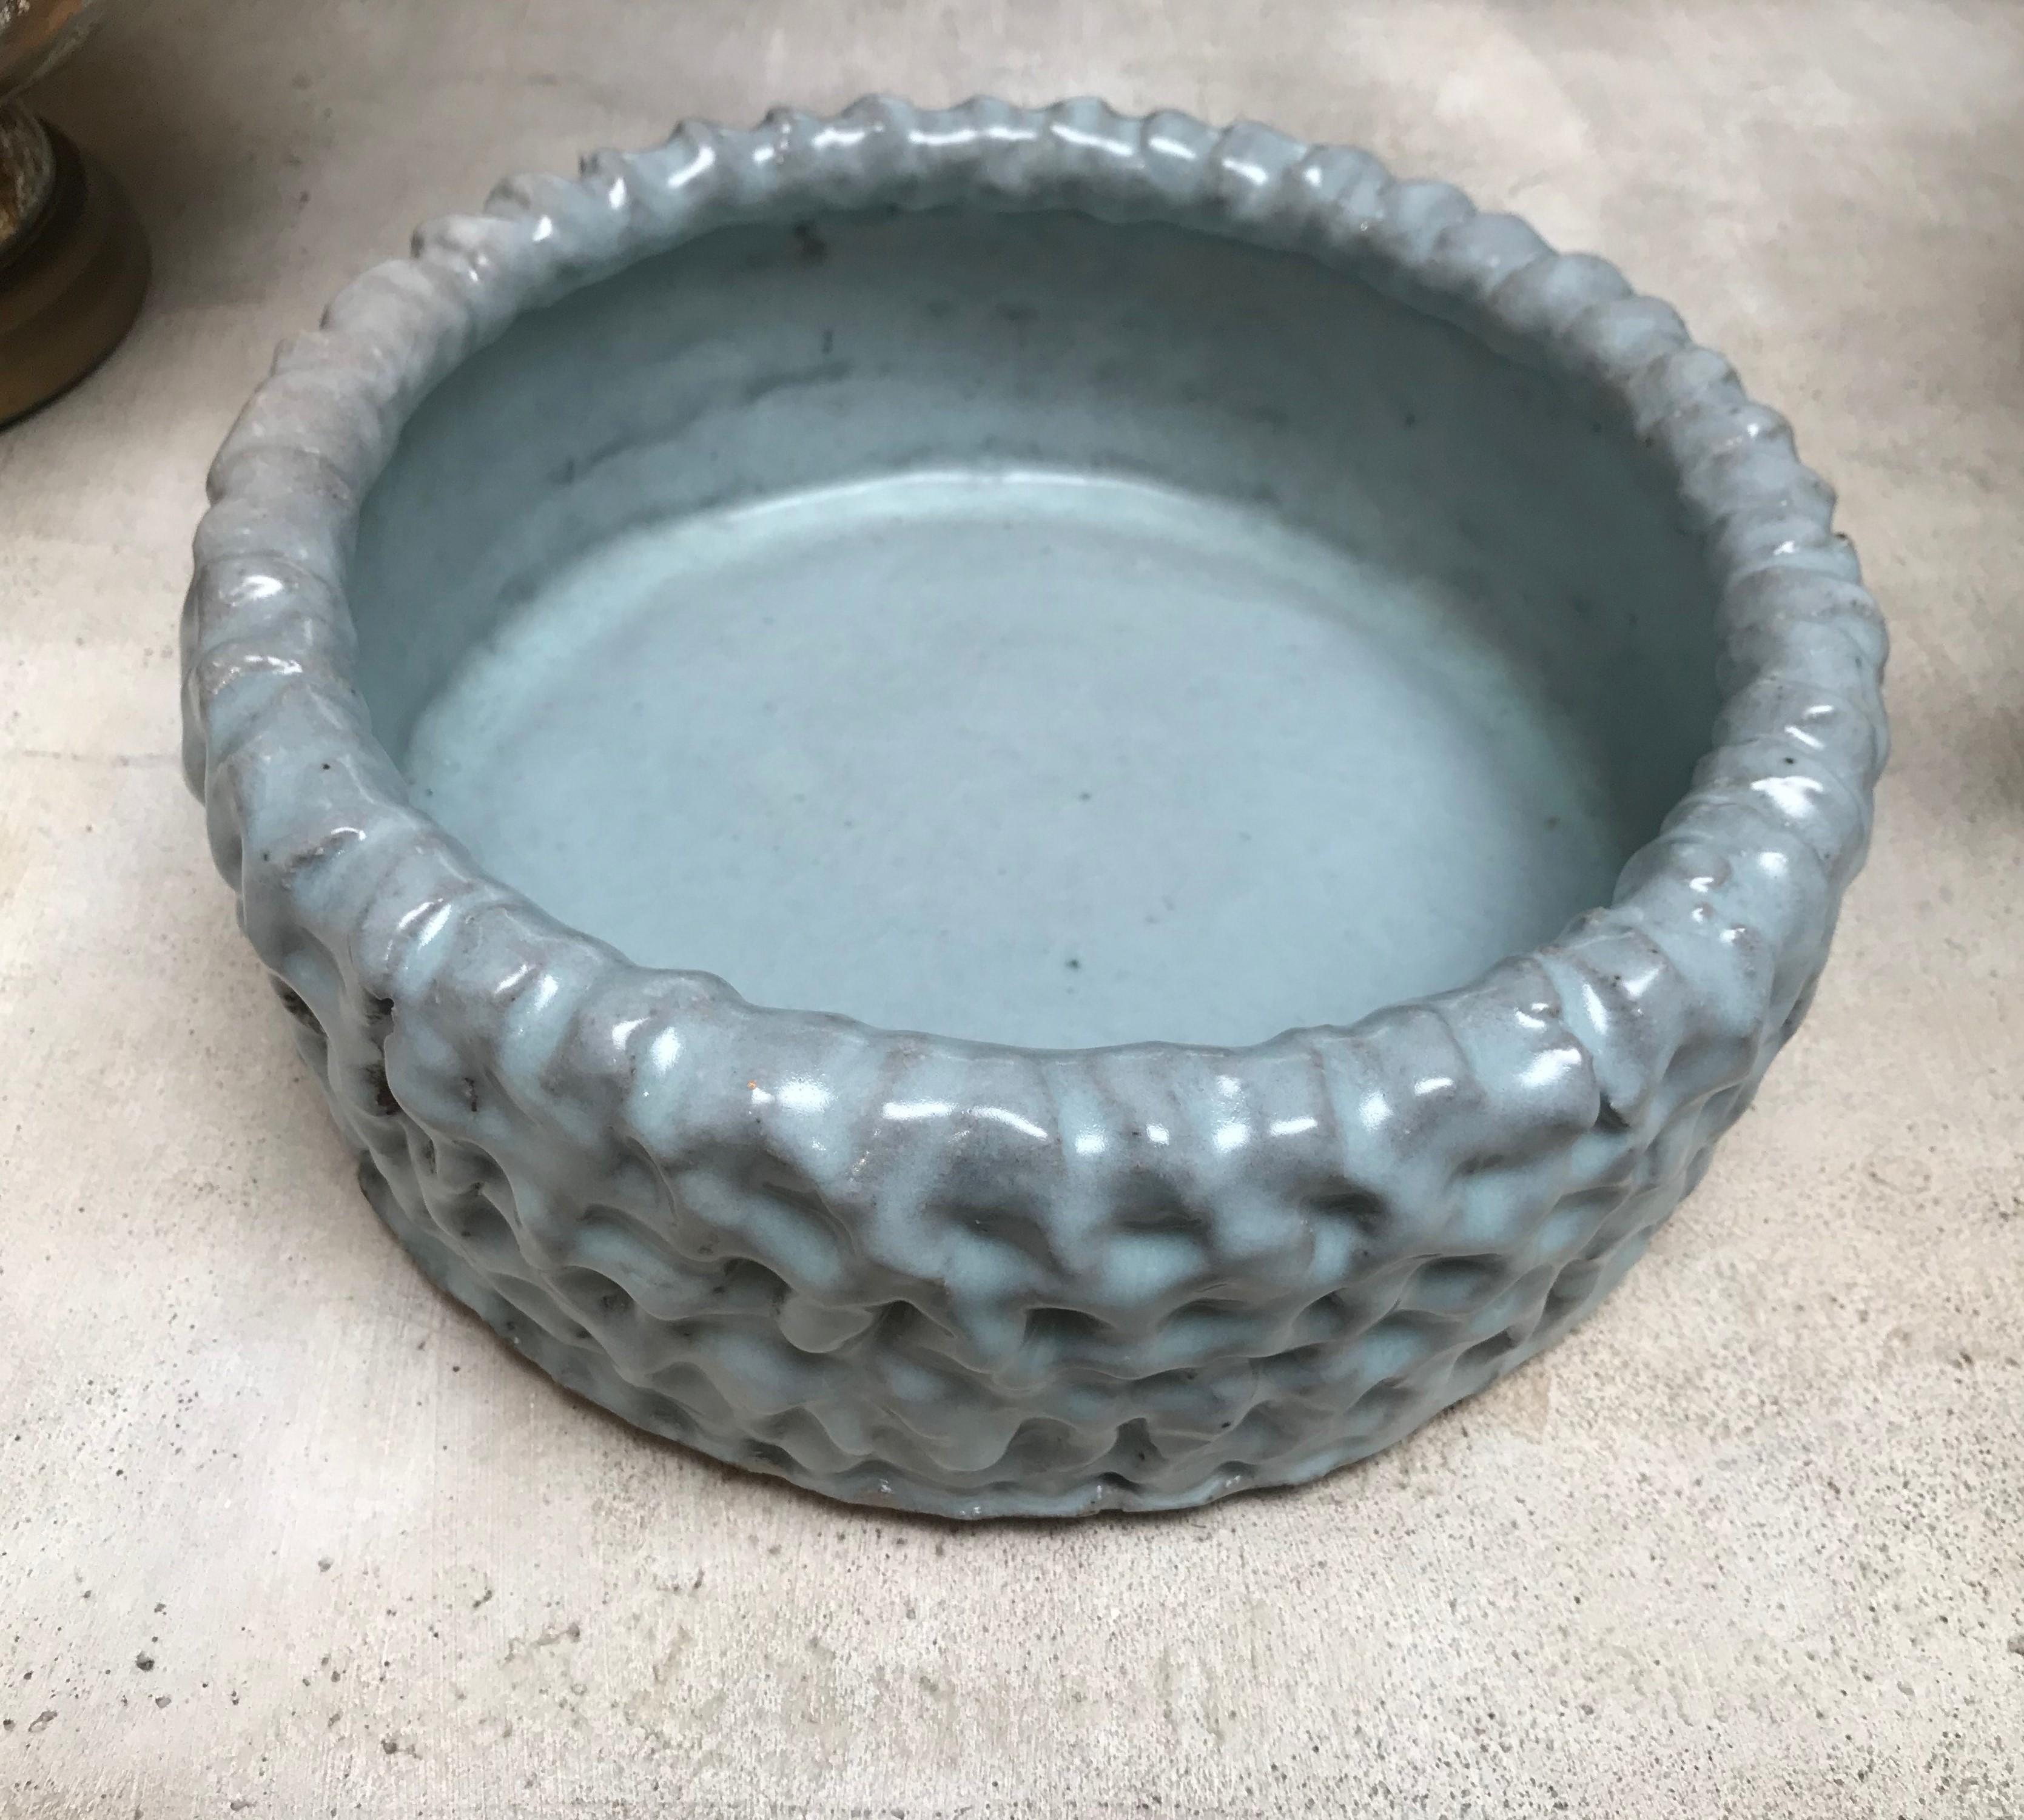 Hand thrown vessel, earthenware vessel glazed in celadon, 
Measures: 13